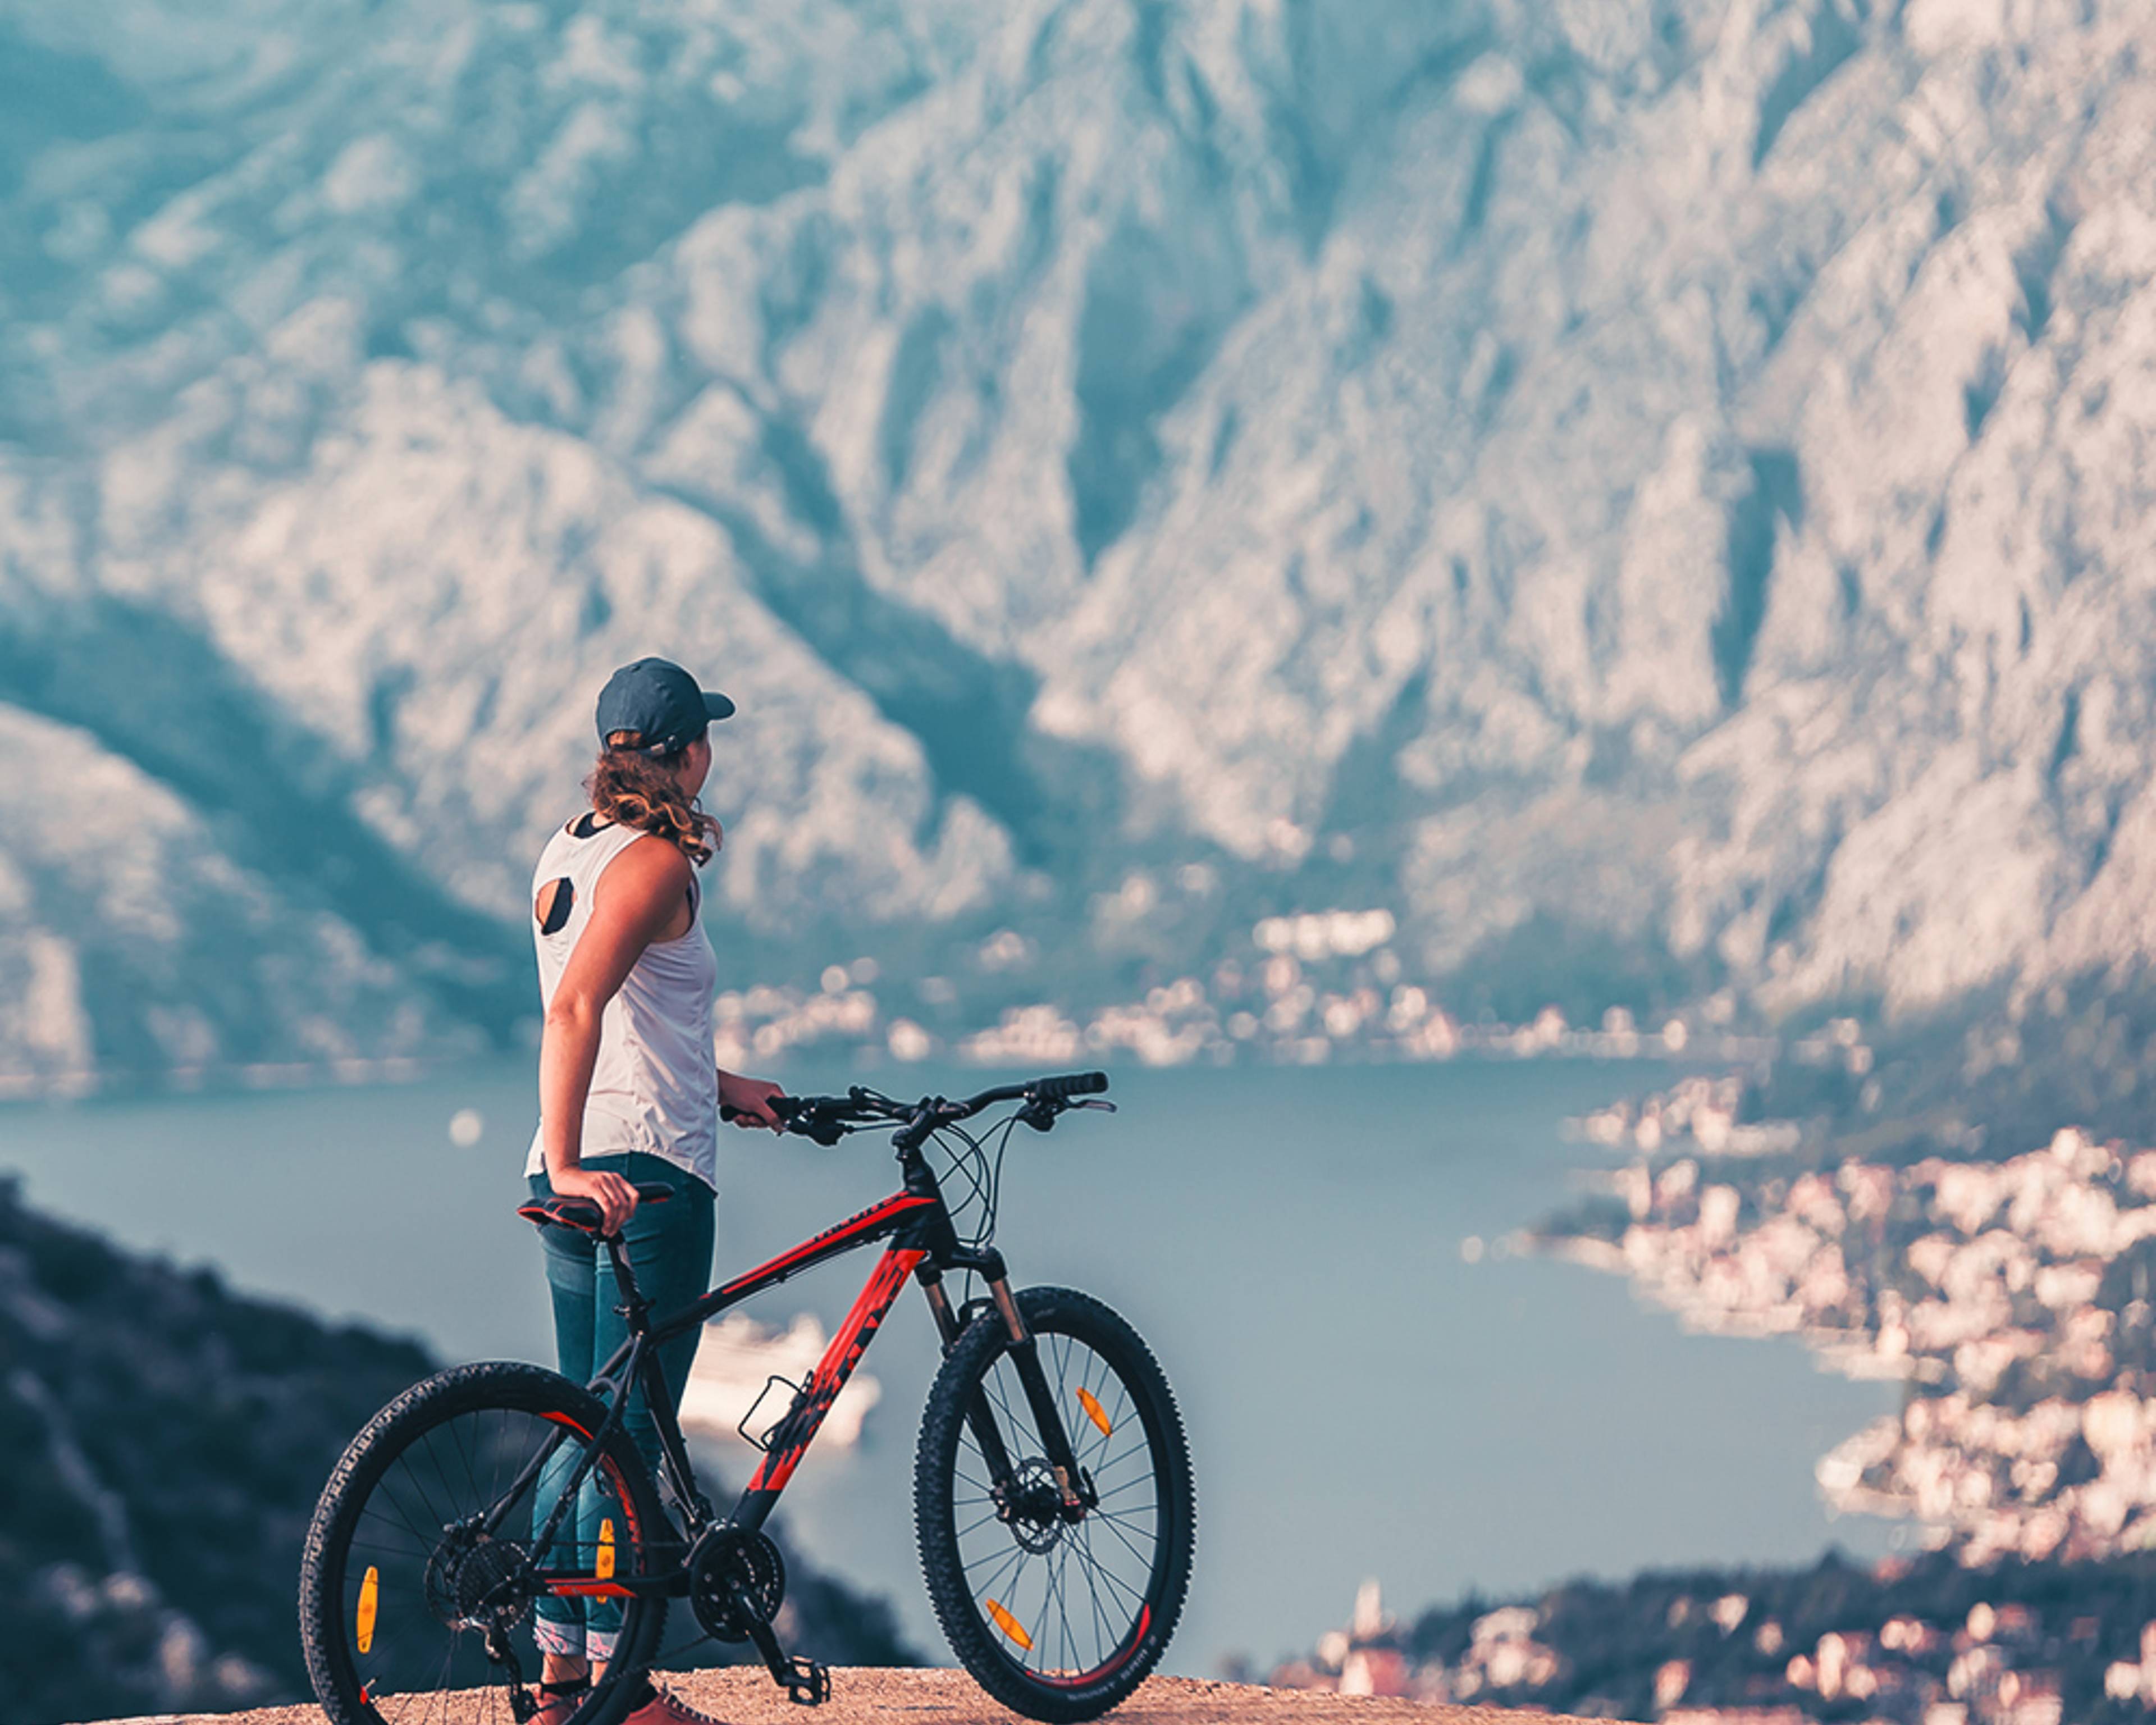 Votre voyage Vélo au Monténégro sur mesure